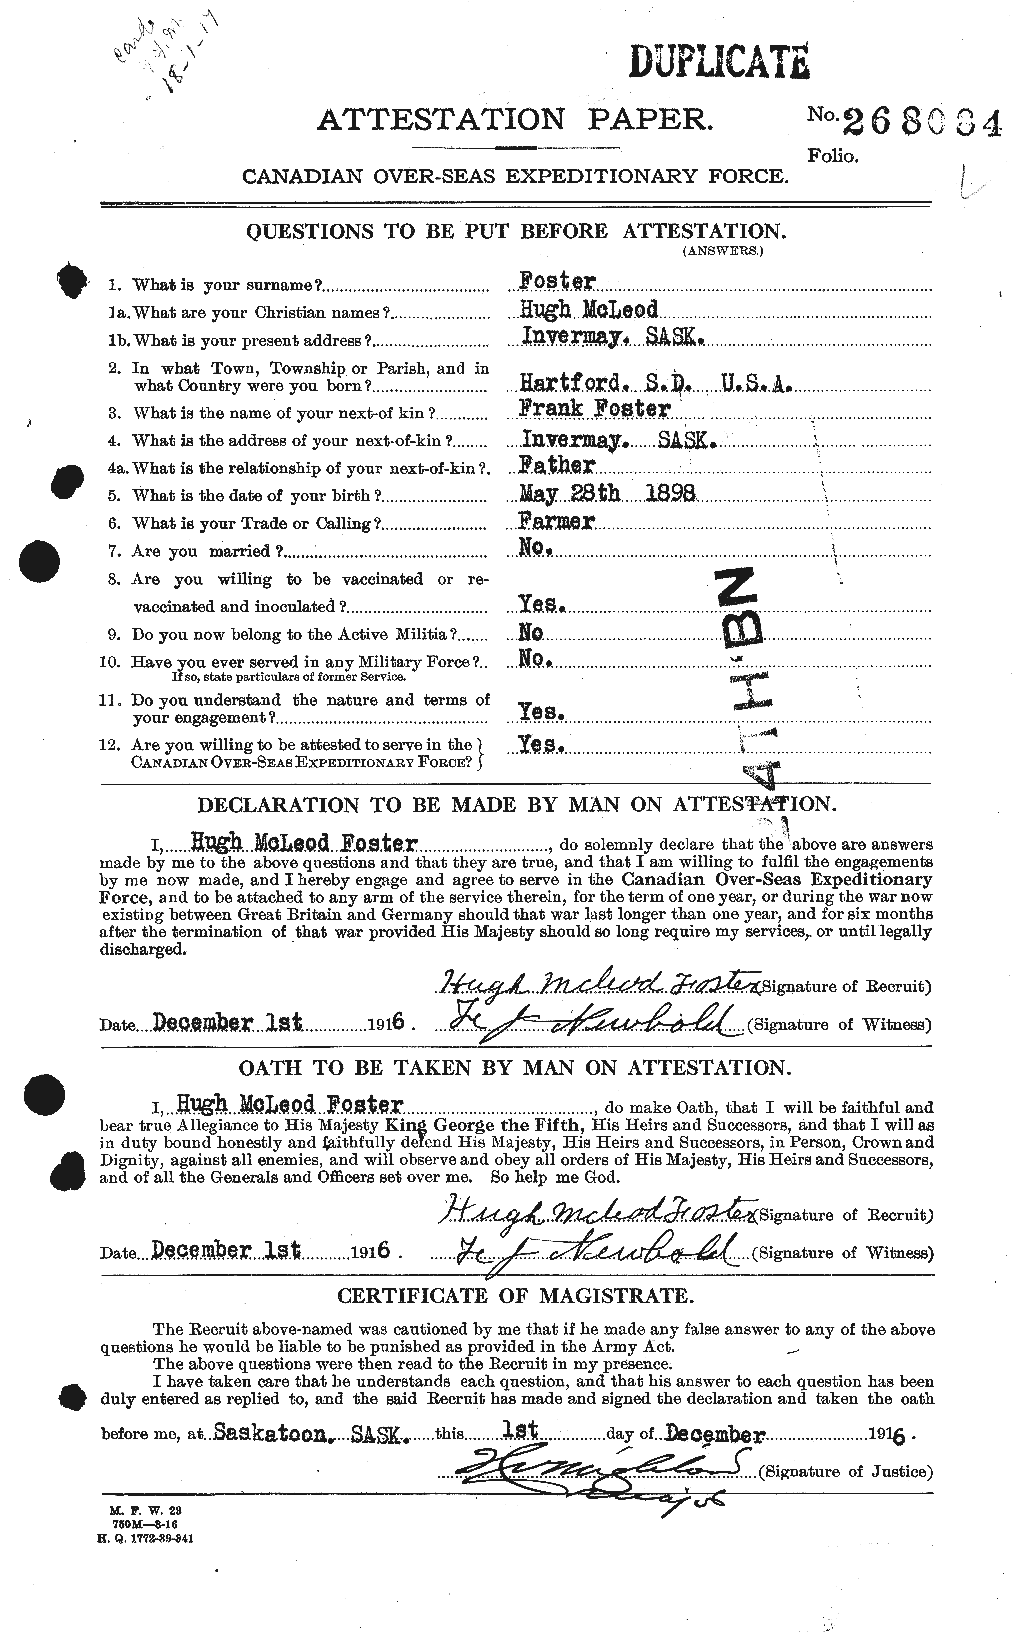 Dossiers du Personnel de la Première Guerre mondiale - CEC 333268a